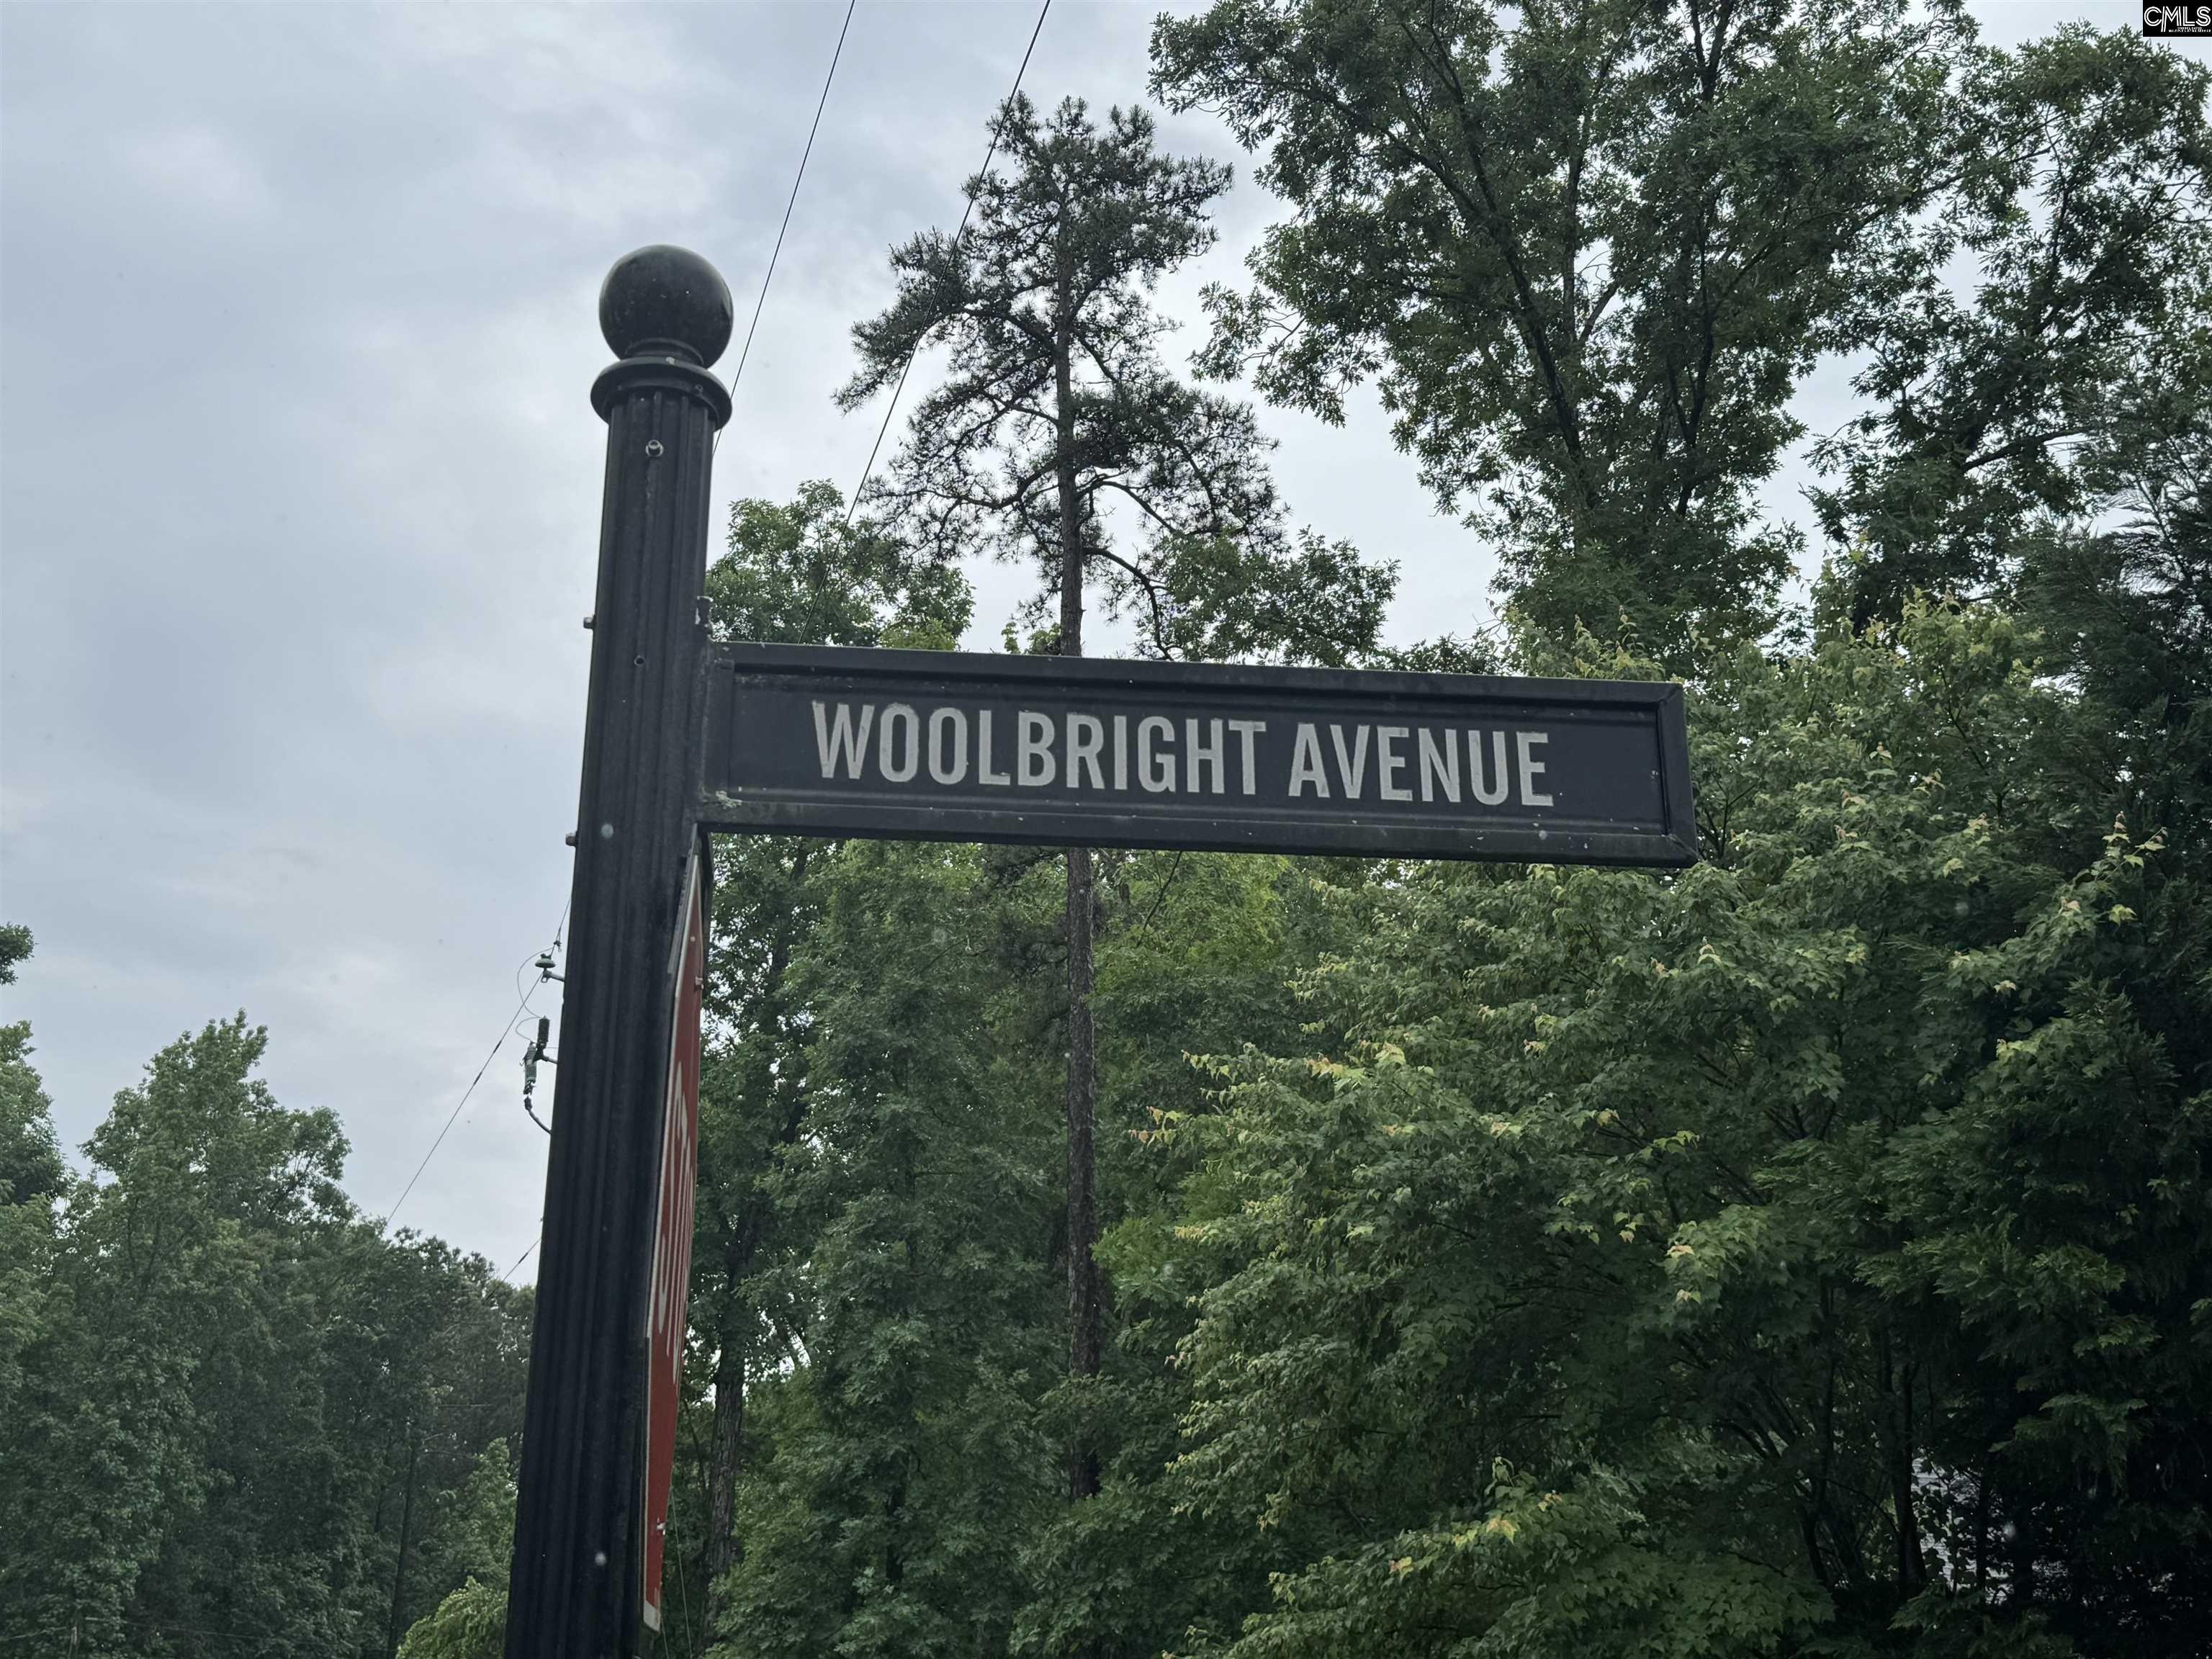 2. 107 Woolbright Avenue